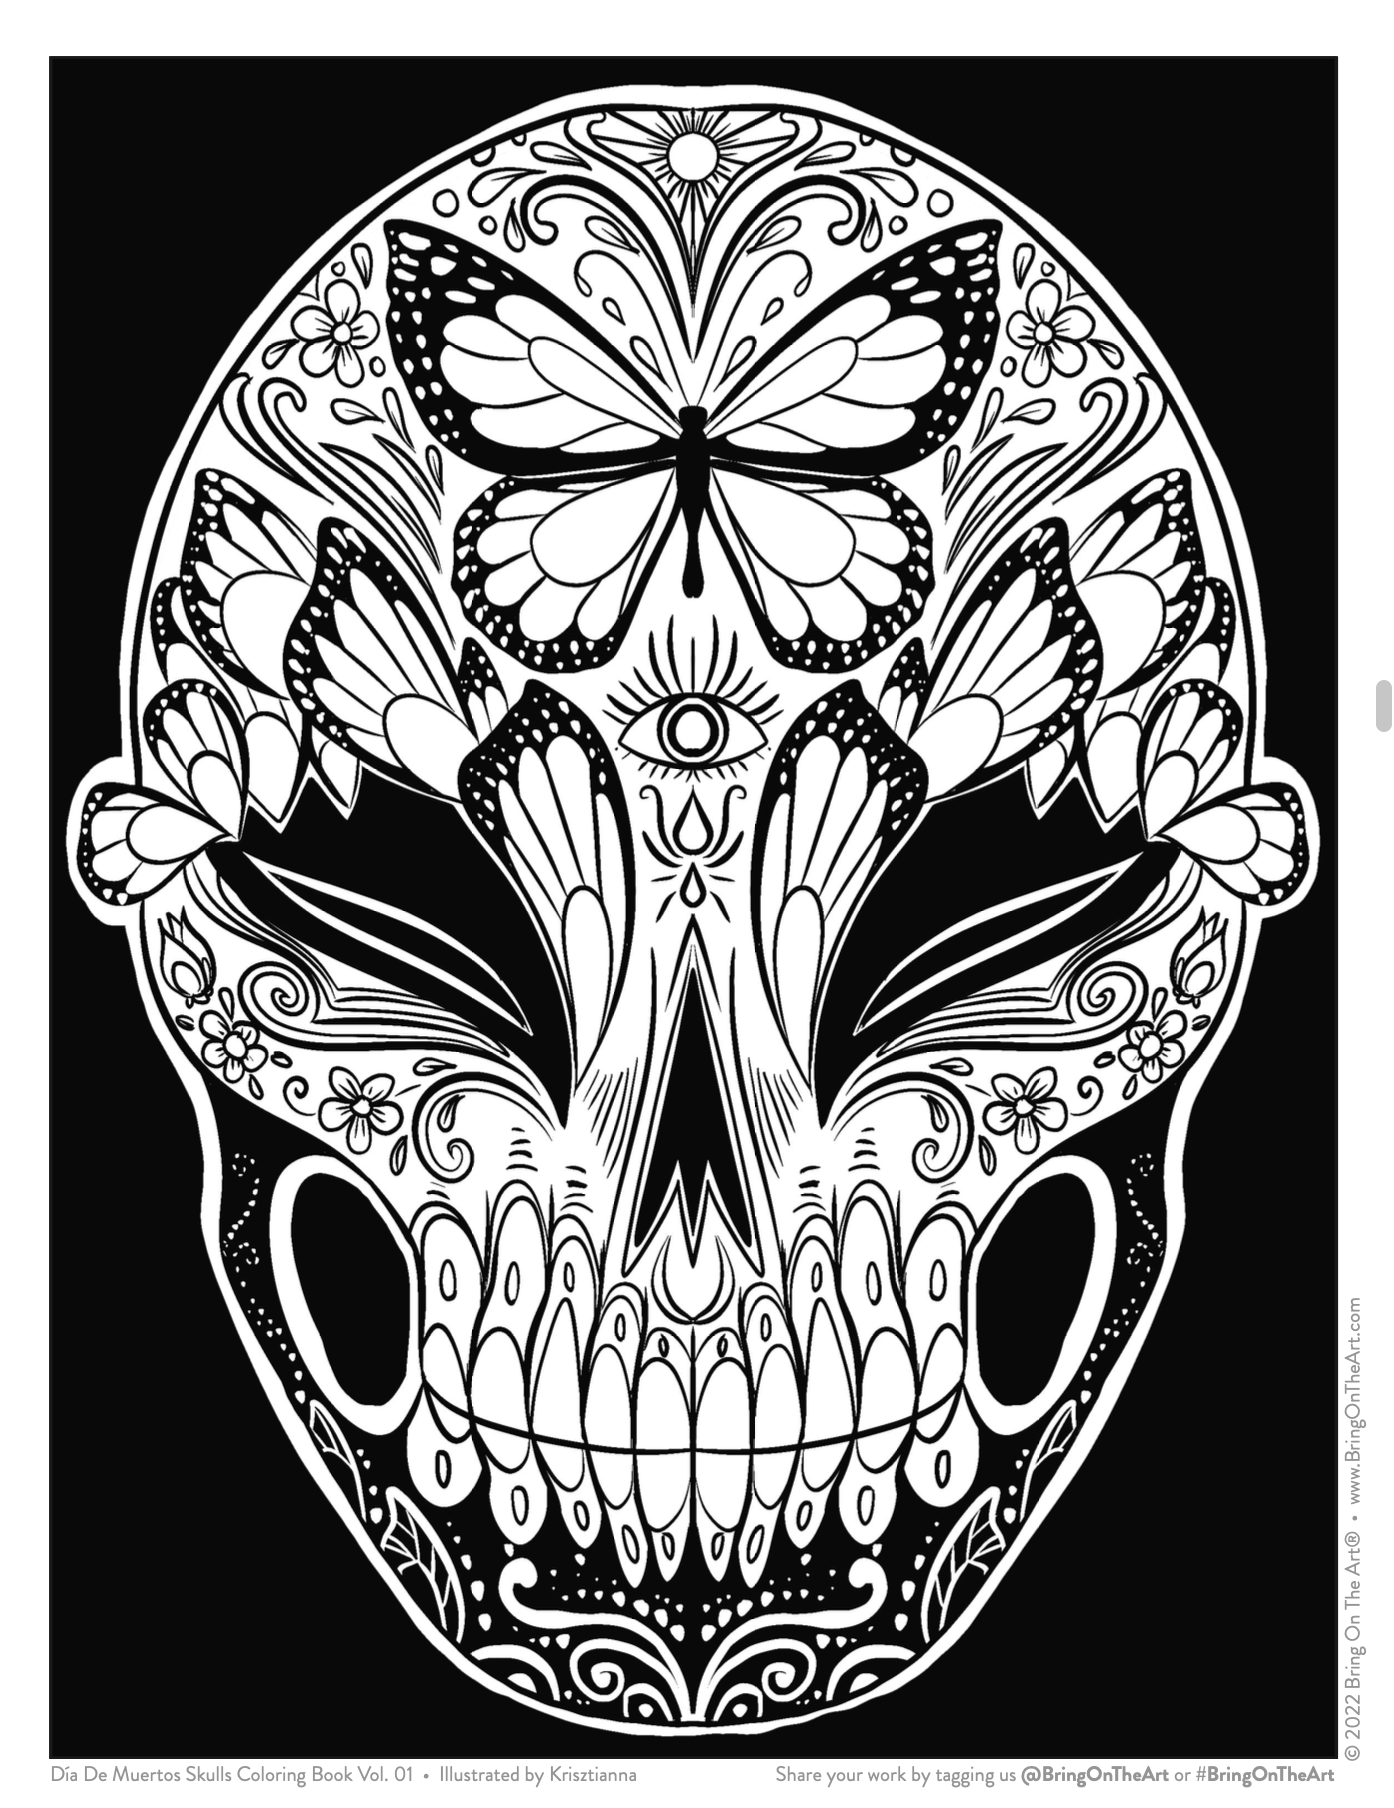 Día De Muertos Skulls Coloring Book Vol. 01